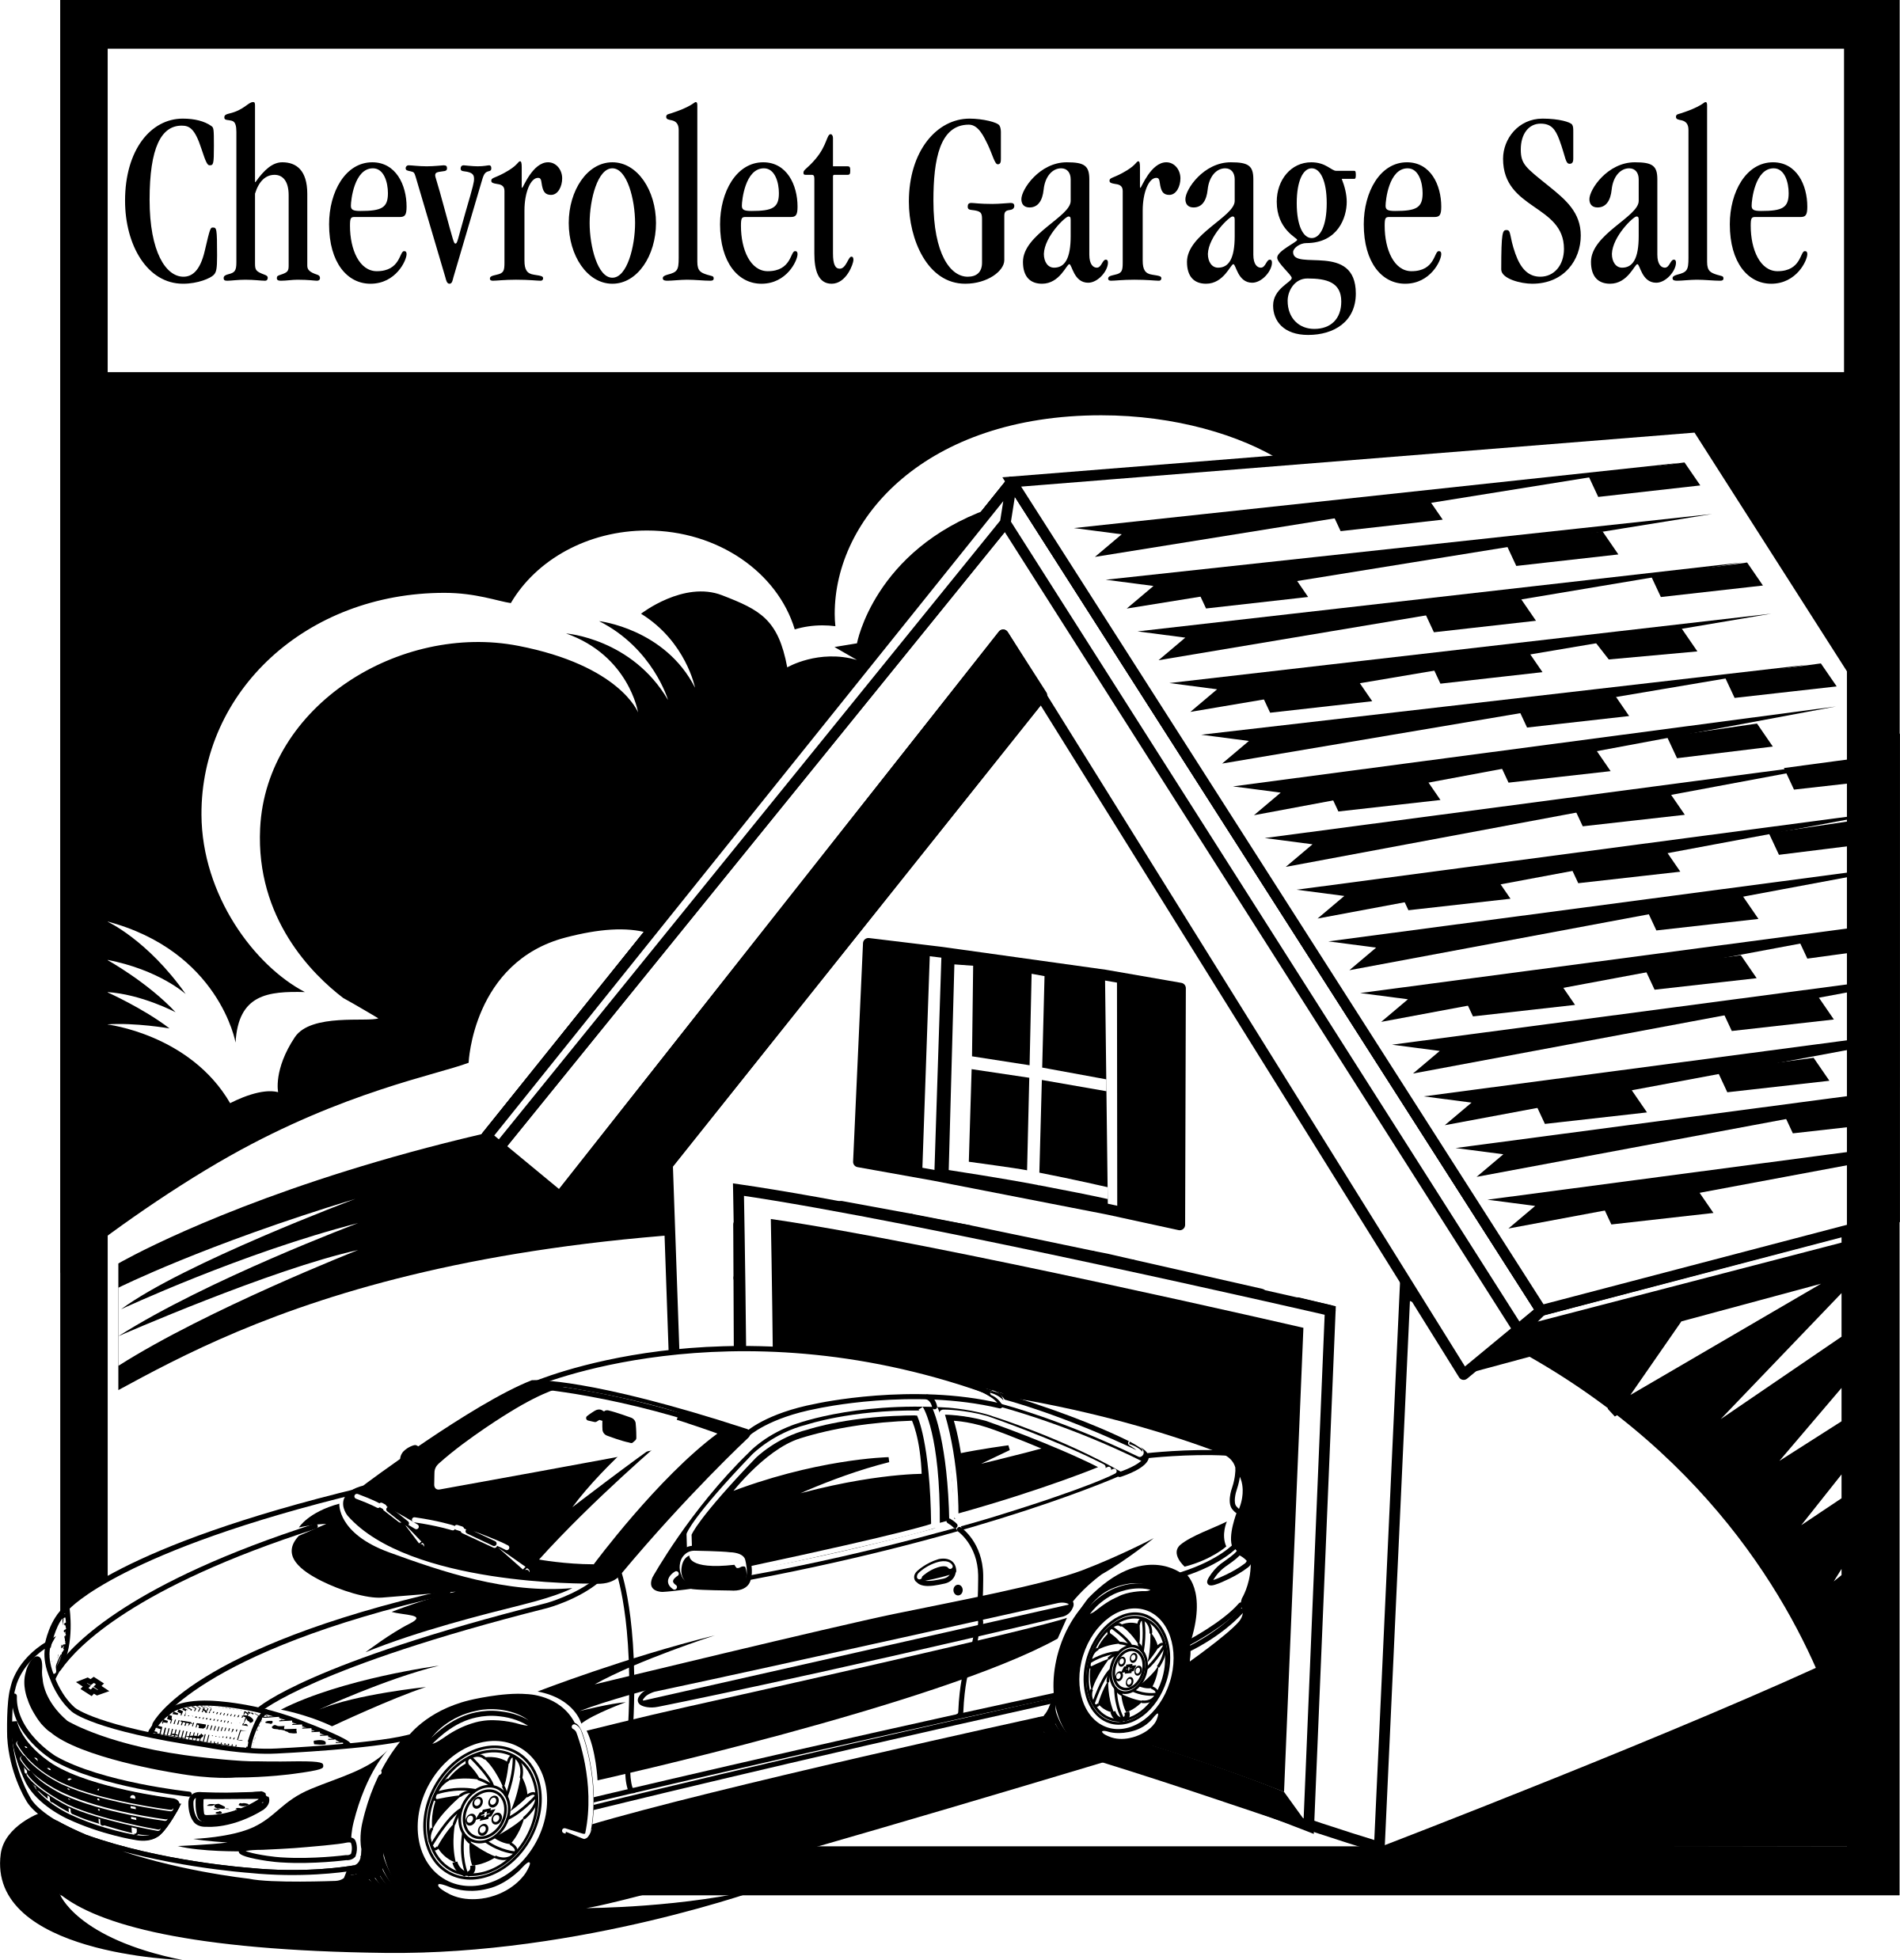 Chevrolet Garage Logo - Chevrolet Garage Sale Logo PNG Transparent & SVG Vector - Freebie Supply